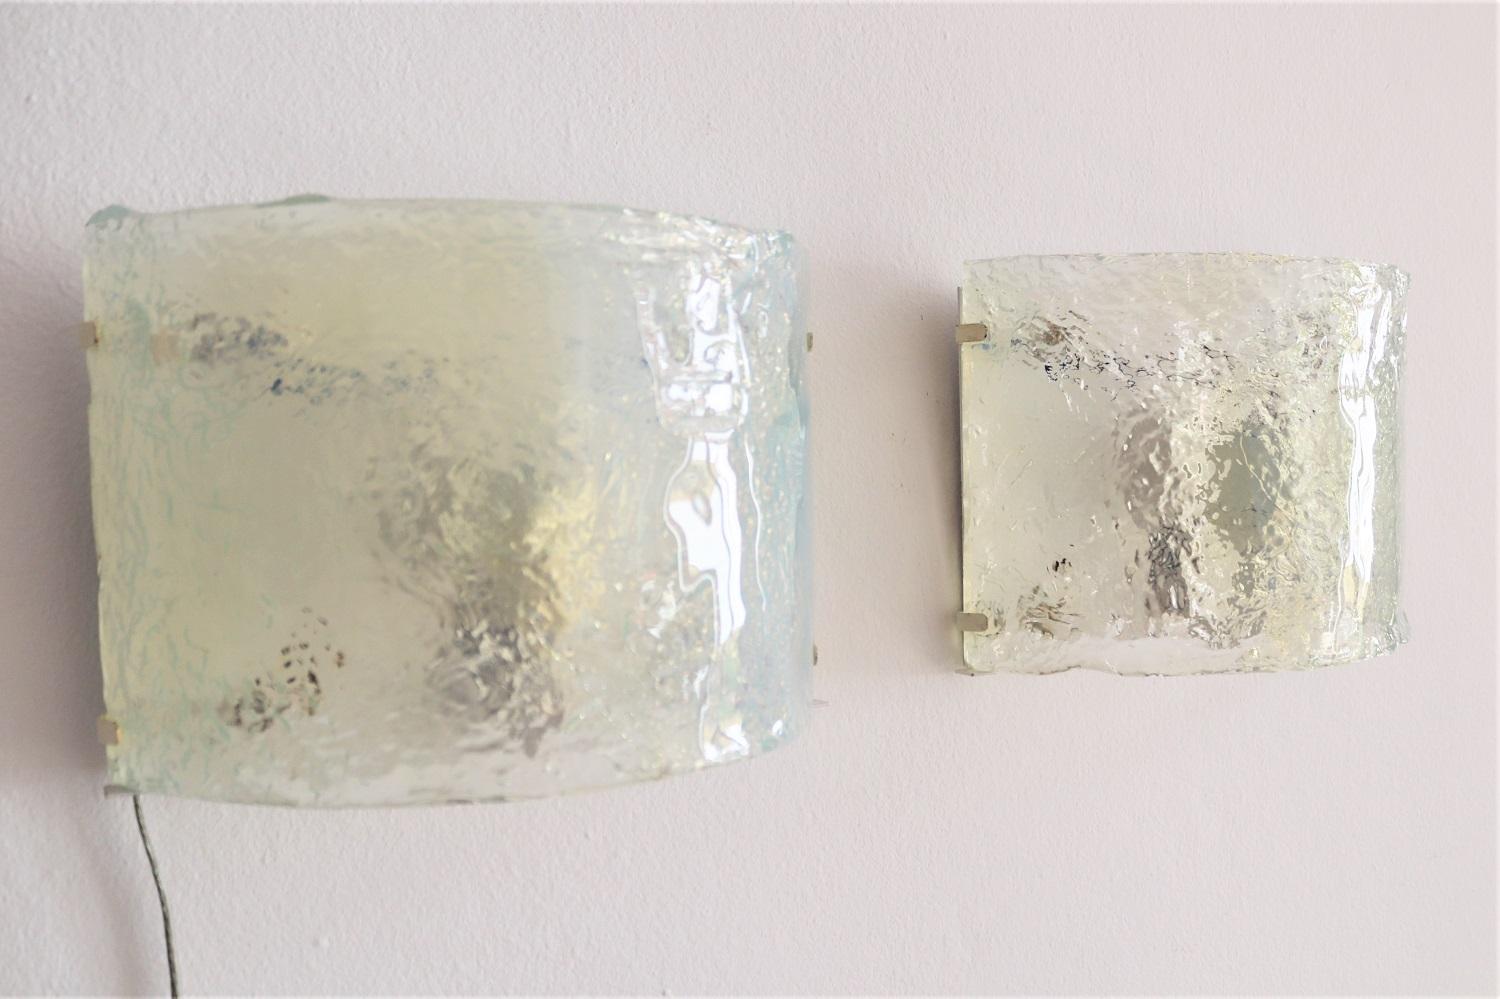 Magnifique ensemble de deux appliques murales en verre Murano opalin incurvé et support mural en métal blanc.
Conçu par Carlo Nason et fabriqué par Mazzega.
Fabriqué en Italie dans les années 1970.
Les verres opalescents laissent une impression